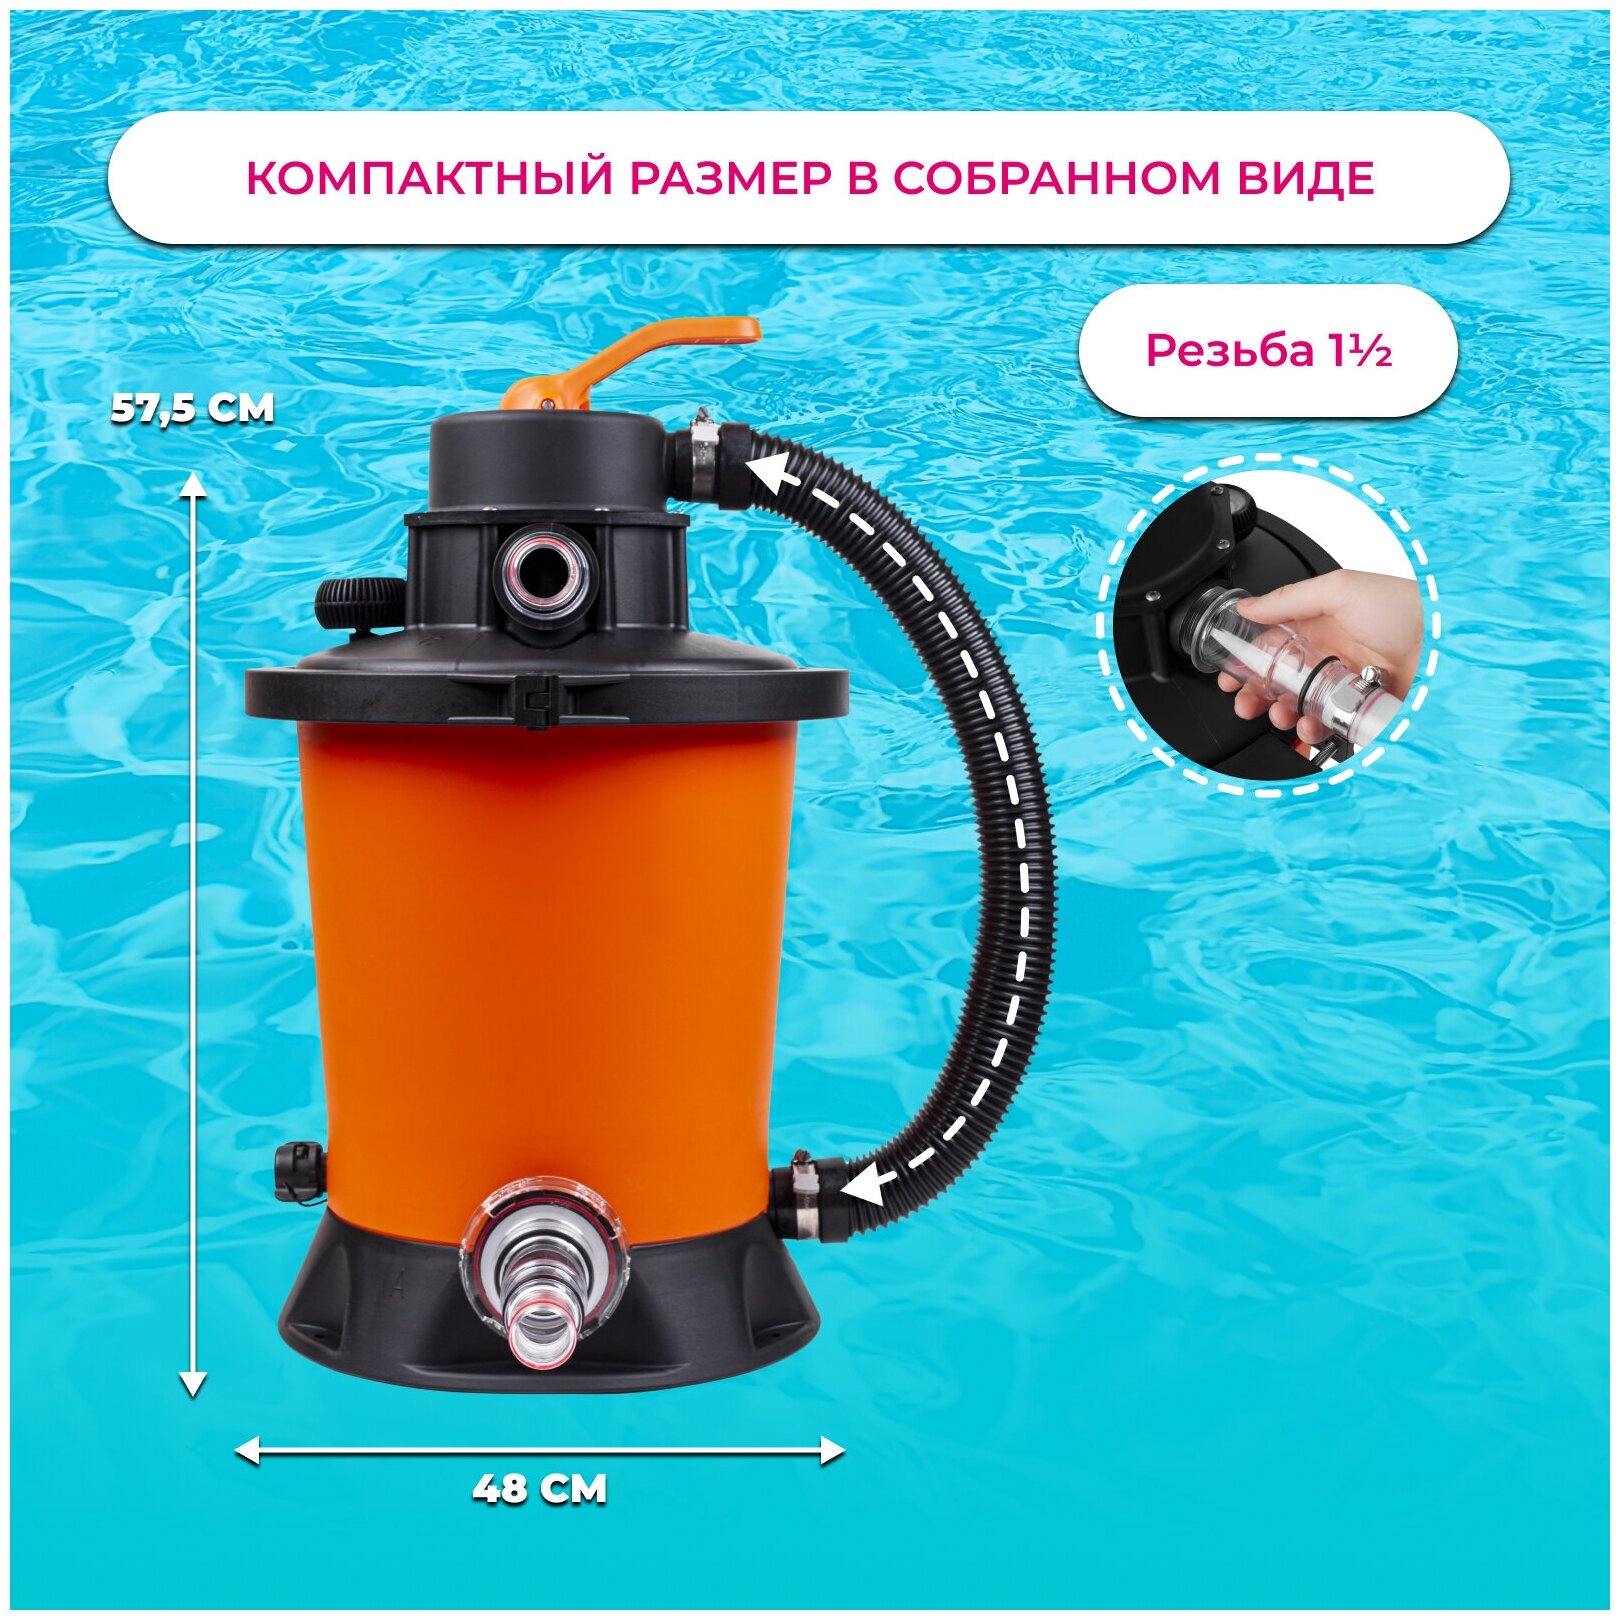 Песочный фильтр-насос (песчаный) Vommy VM-1 - 3,785 куб. м/час для бассейна объемом до 18 куб. м - каркасных, надувных, сборных бассейнов - фотография № 14